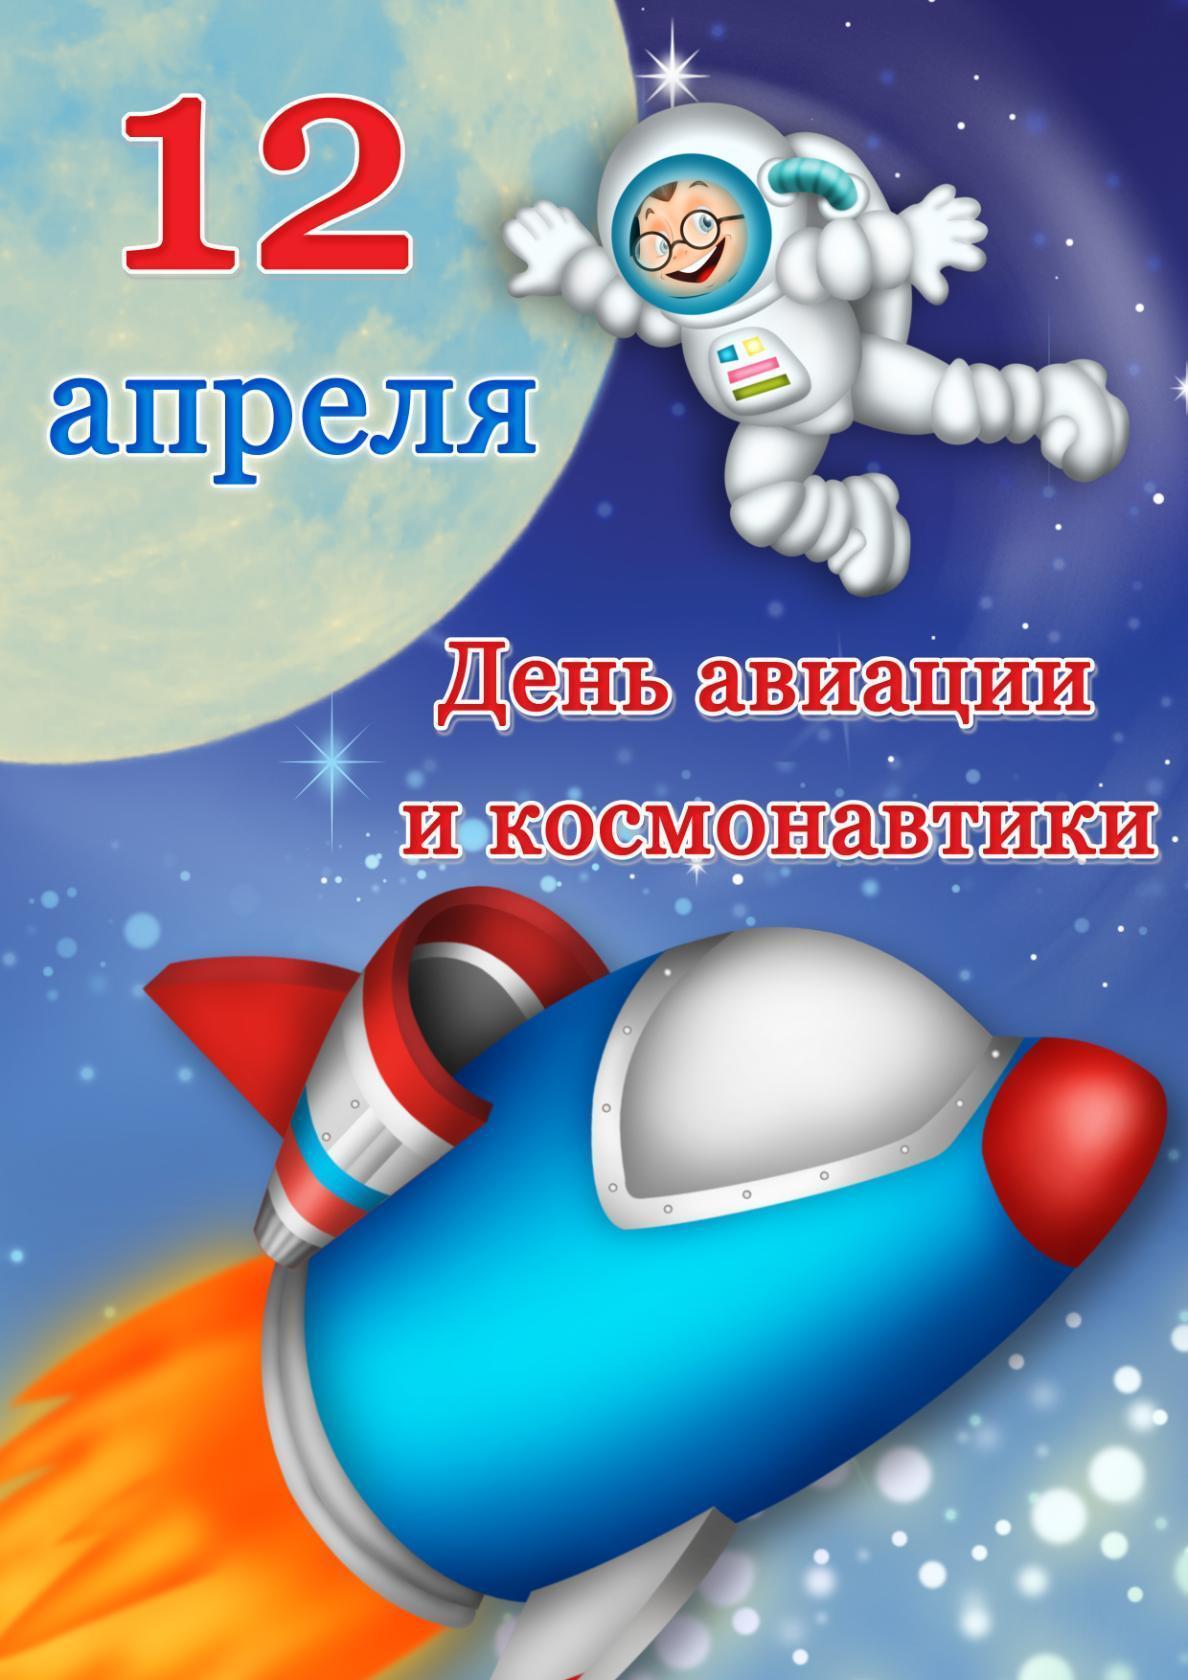 День космонавтики 12 апреля , открытка с праздником мультяшные . День космонавтики и авиации 12 апреля , картинка , открытка мультяшная с изображением мультяшного космонавта , космос , планеты , открытка с днём космонавтики .